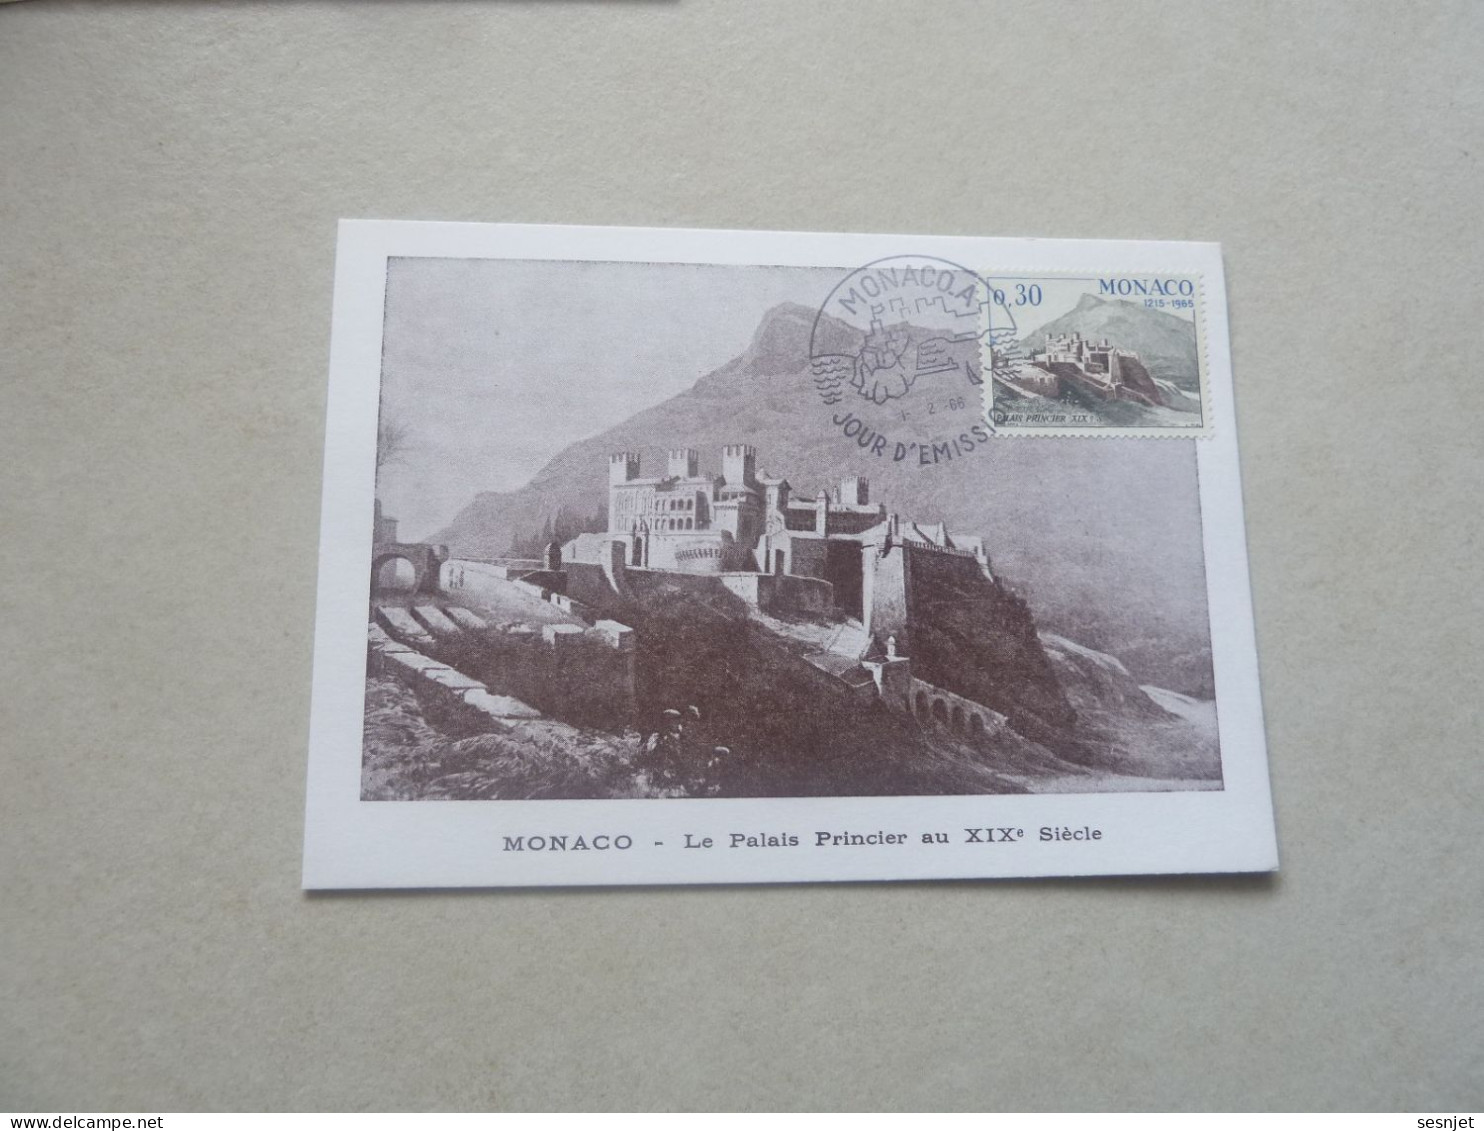 Monaco - Le Palais Au 19ème Siècle - 30c. - Yt 680 - Carte Premier Jour D'Emission - Année 1966 - - Cartes-Maximum (CM)